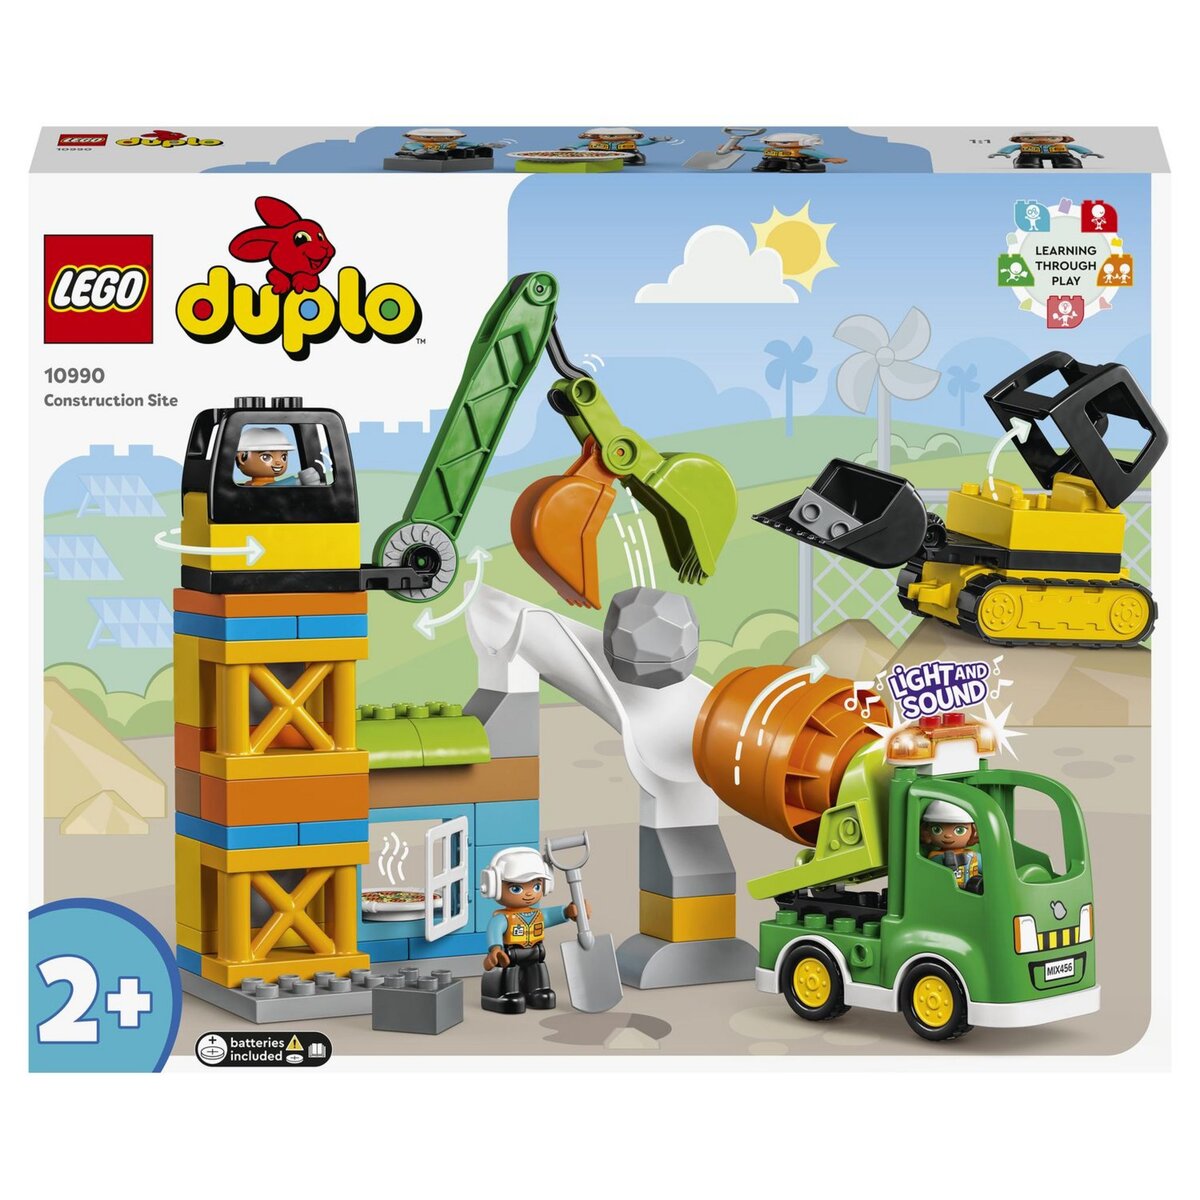 Playmobil, LEGO : jusqu'à -43% à saisir pendant les soldes